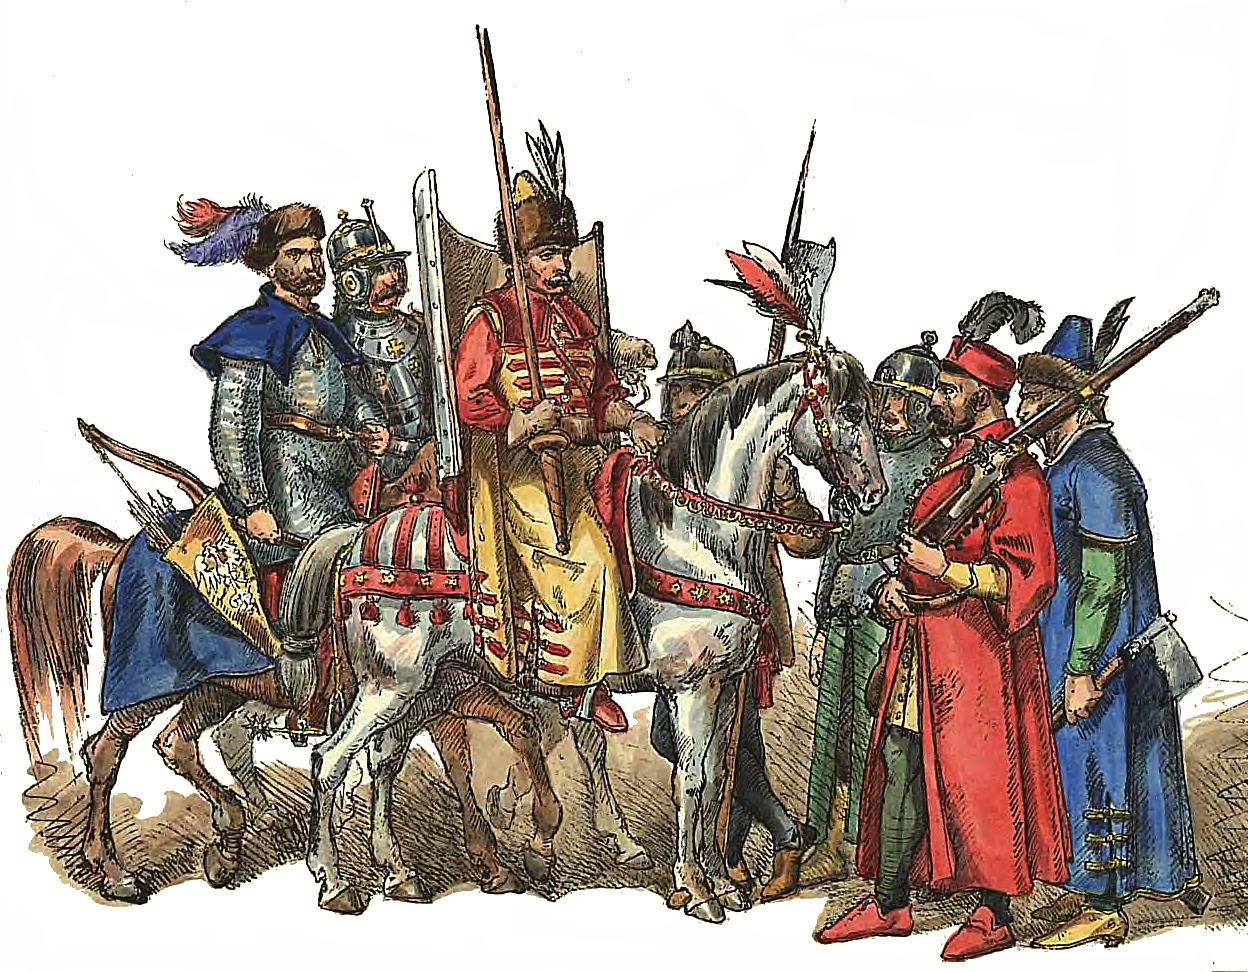 Ян Матейко. Наемные солдаты (жолнеры) войска ВКЛ в XVI веке. 